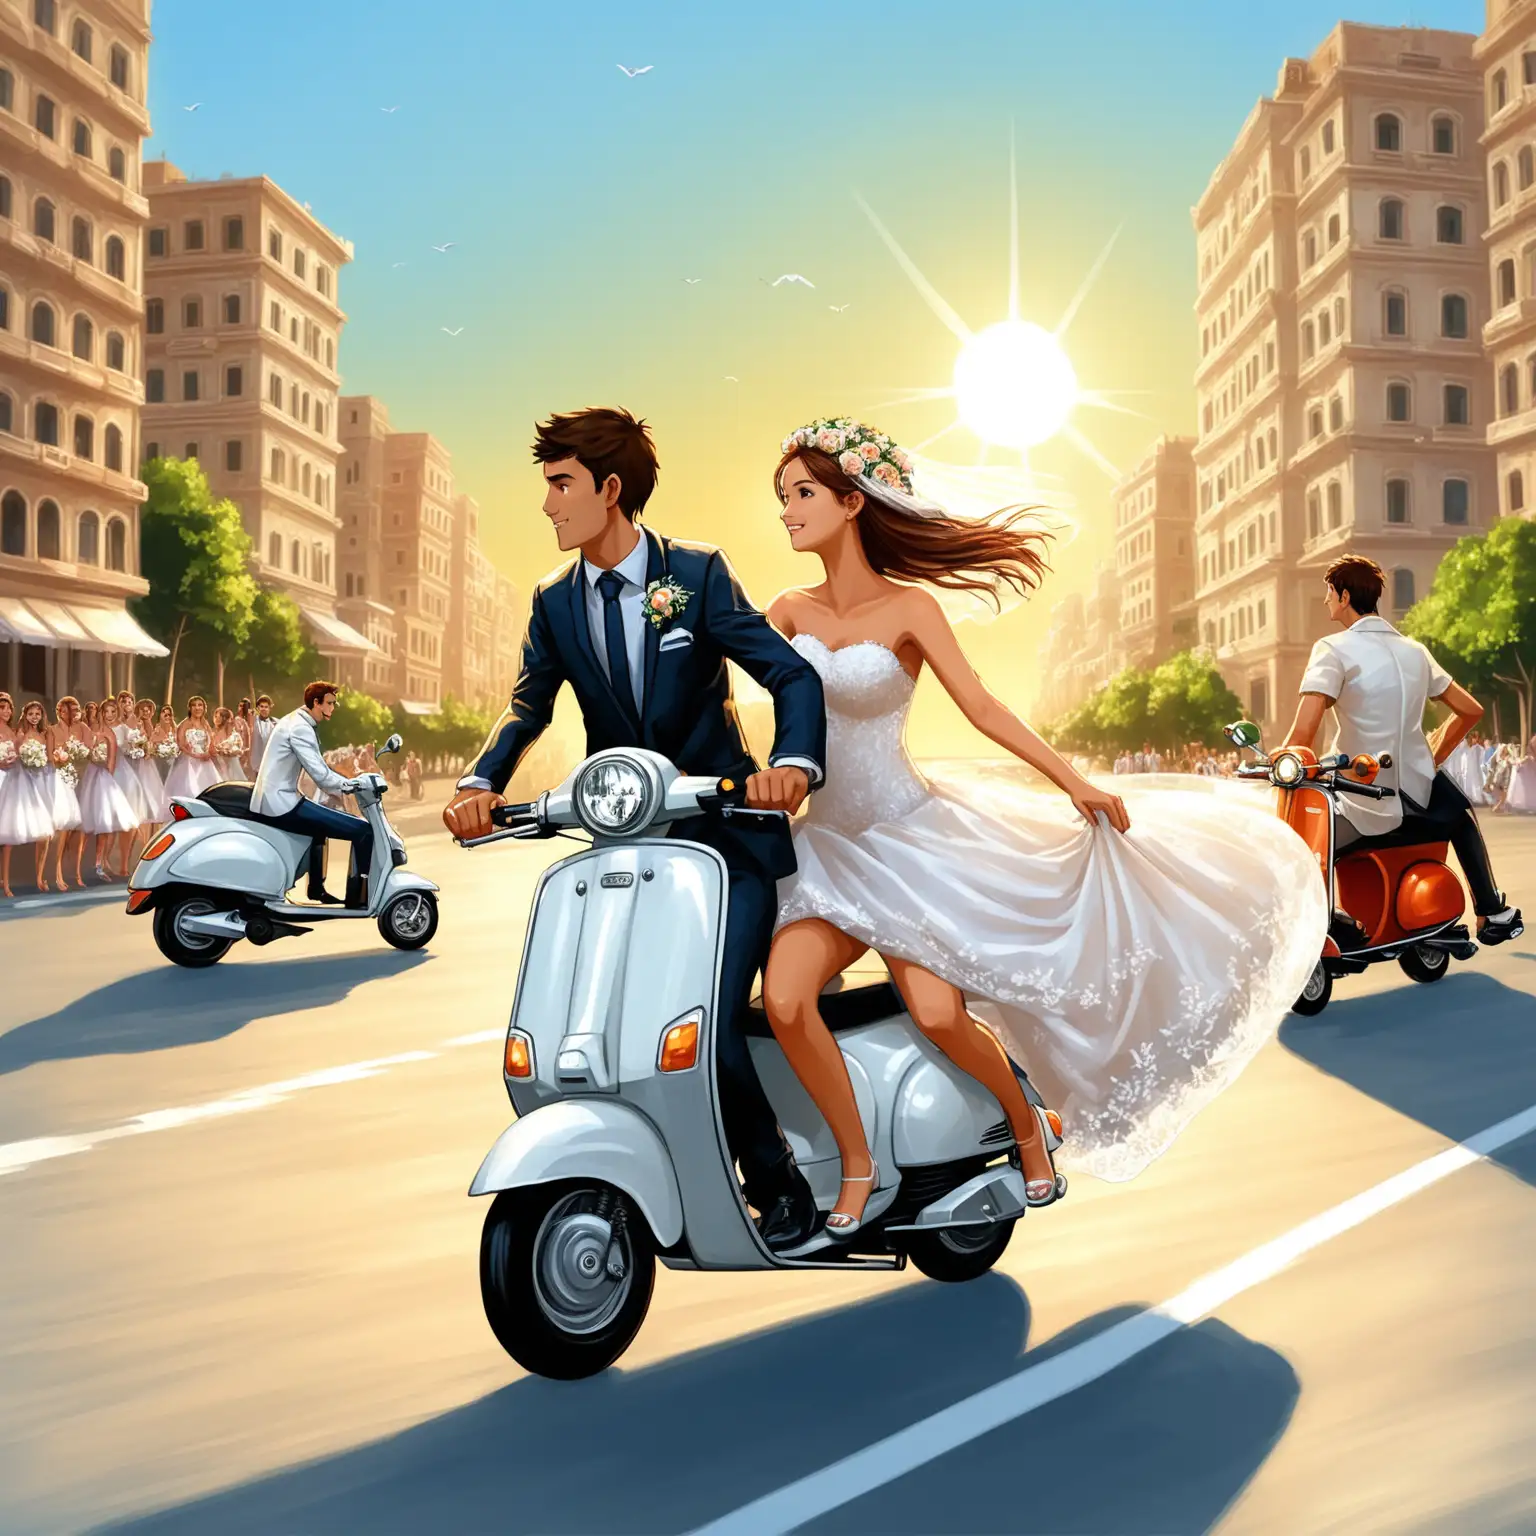 Город, солнце, сочи, море, скутер мчится по дороге, на скутере парень и девушка в свадебном платье, вид сбоку